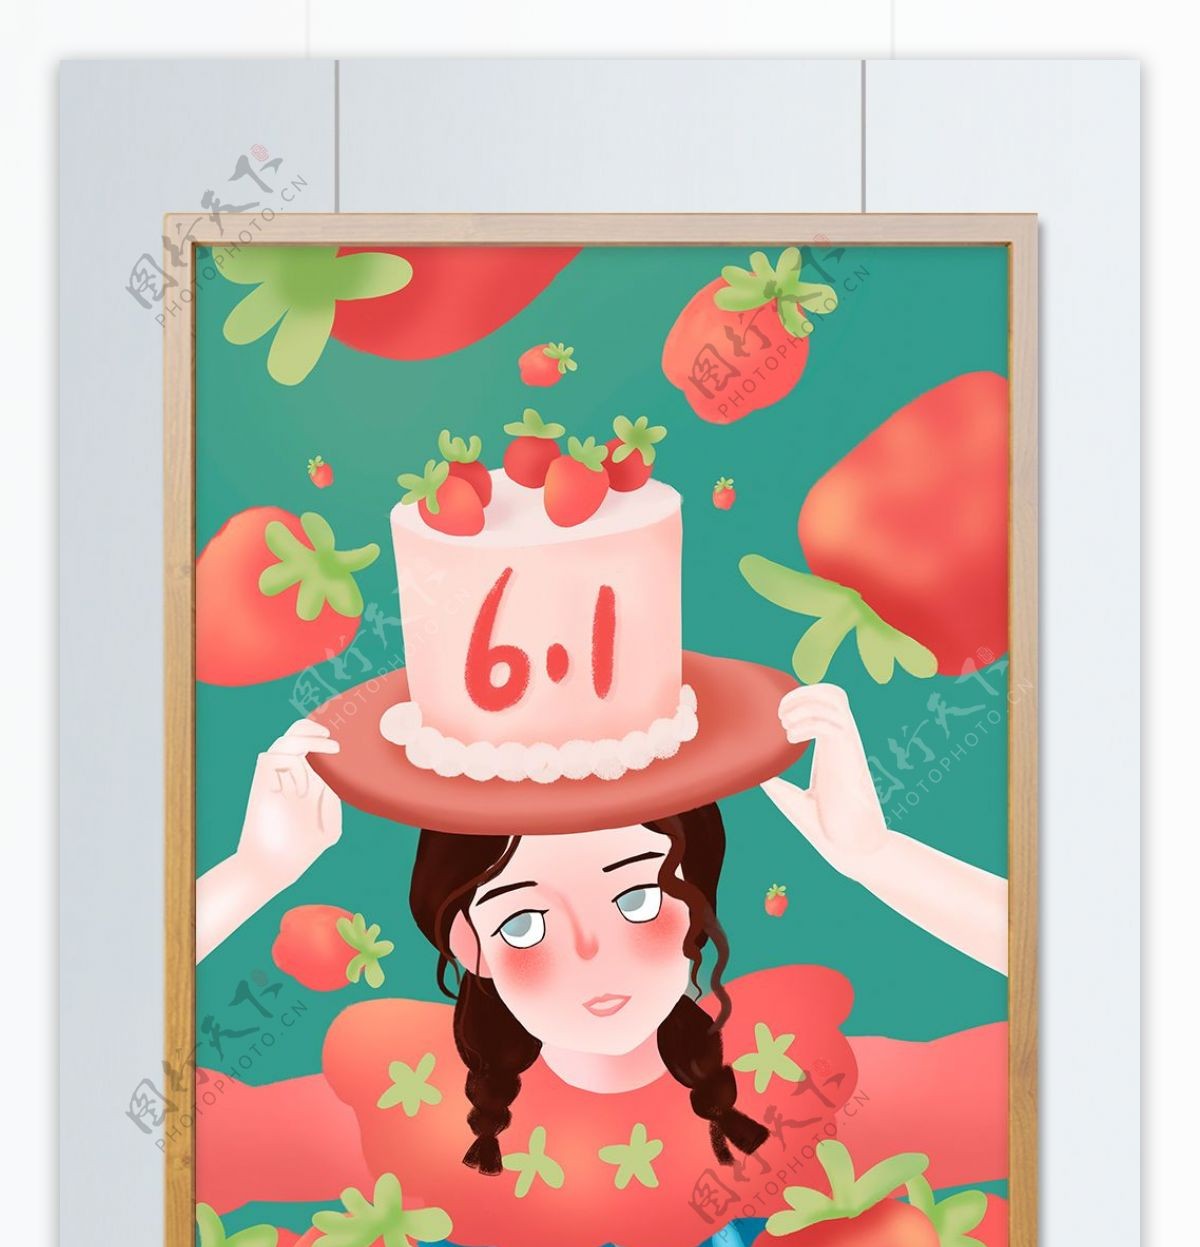 原创六一儿童节礼物草莓生日蛋糕配图插画